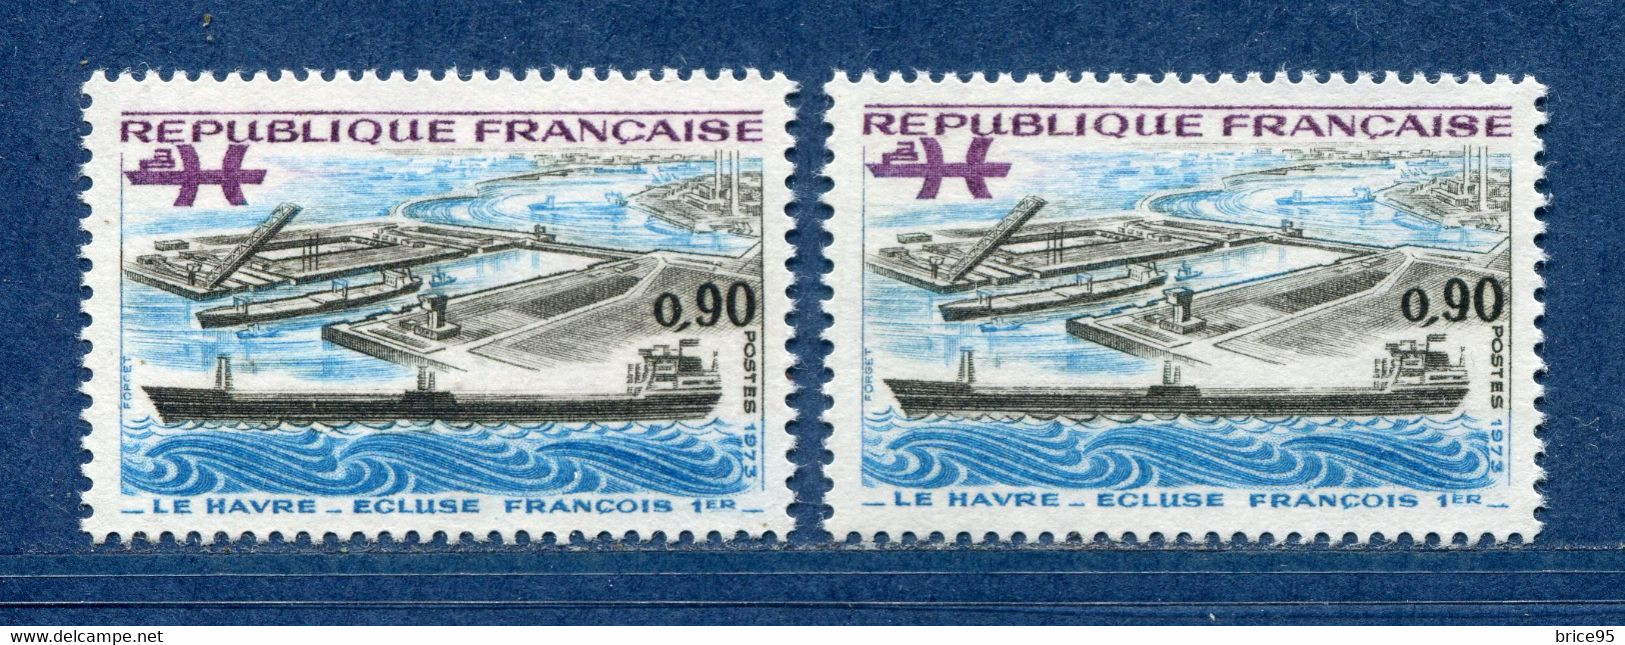 ⭐ France - Variété - YT N° 1772 - Couleurs - Pétouille - Neuf Sans Charnière - 1973 ⭐ - Unused Stamps